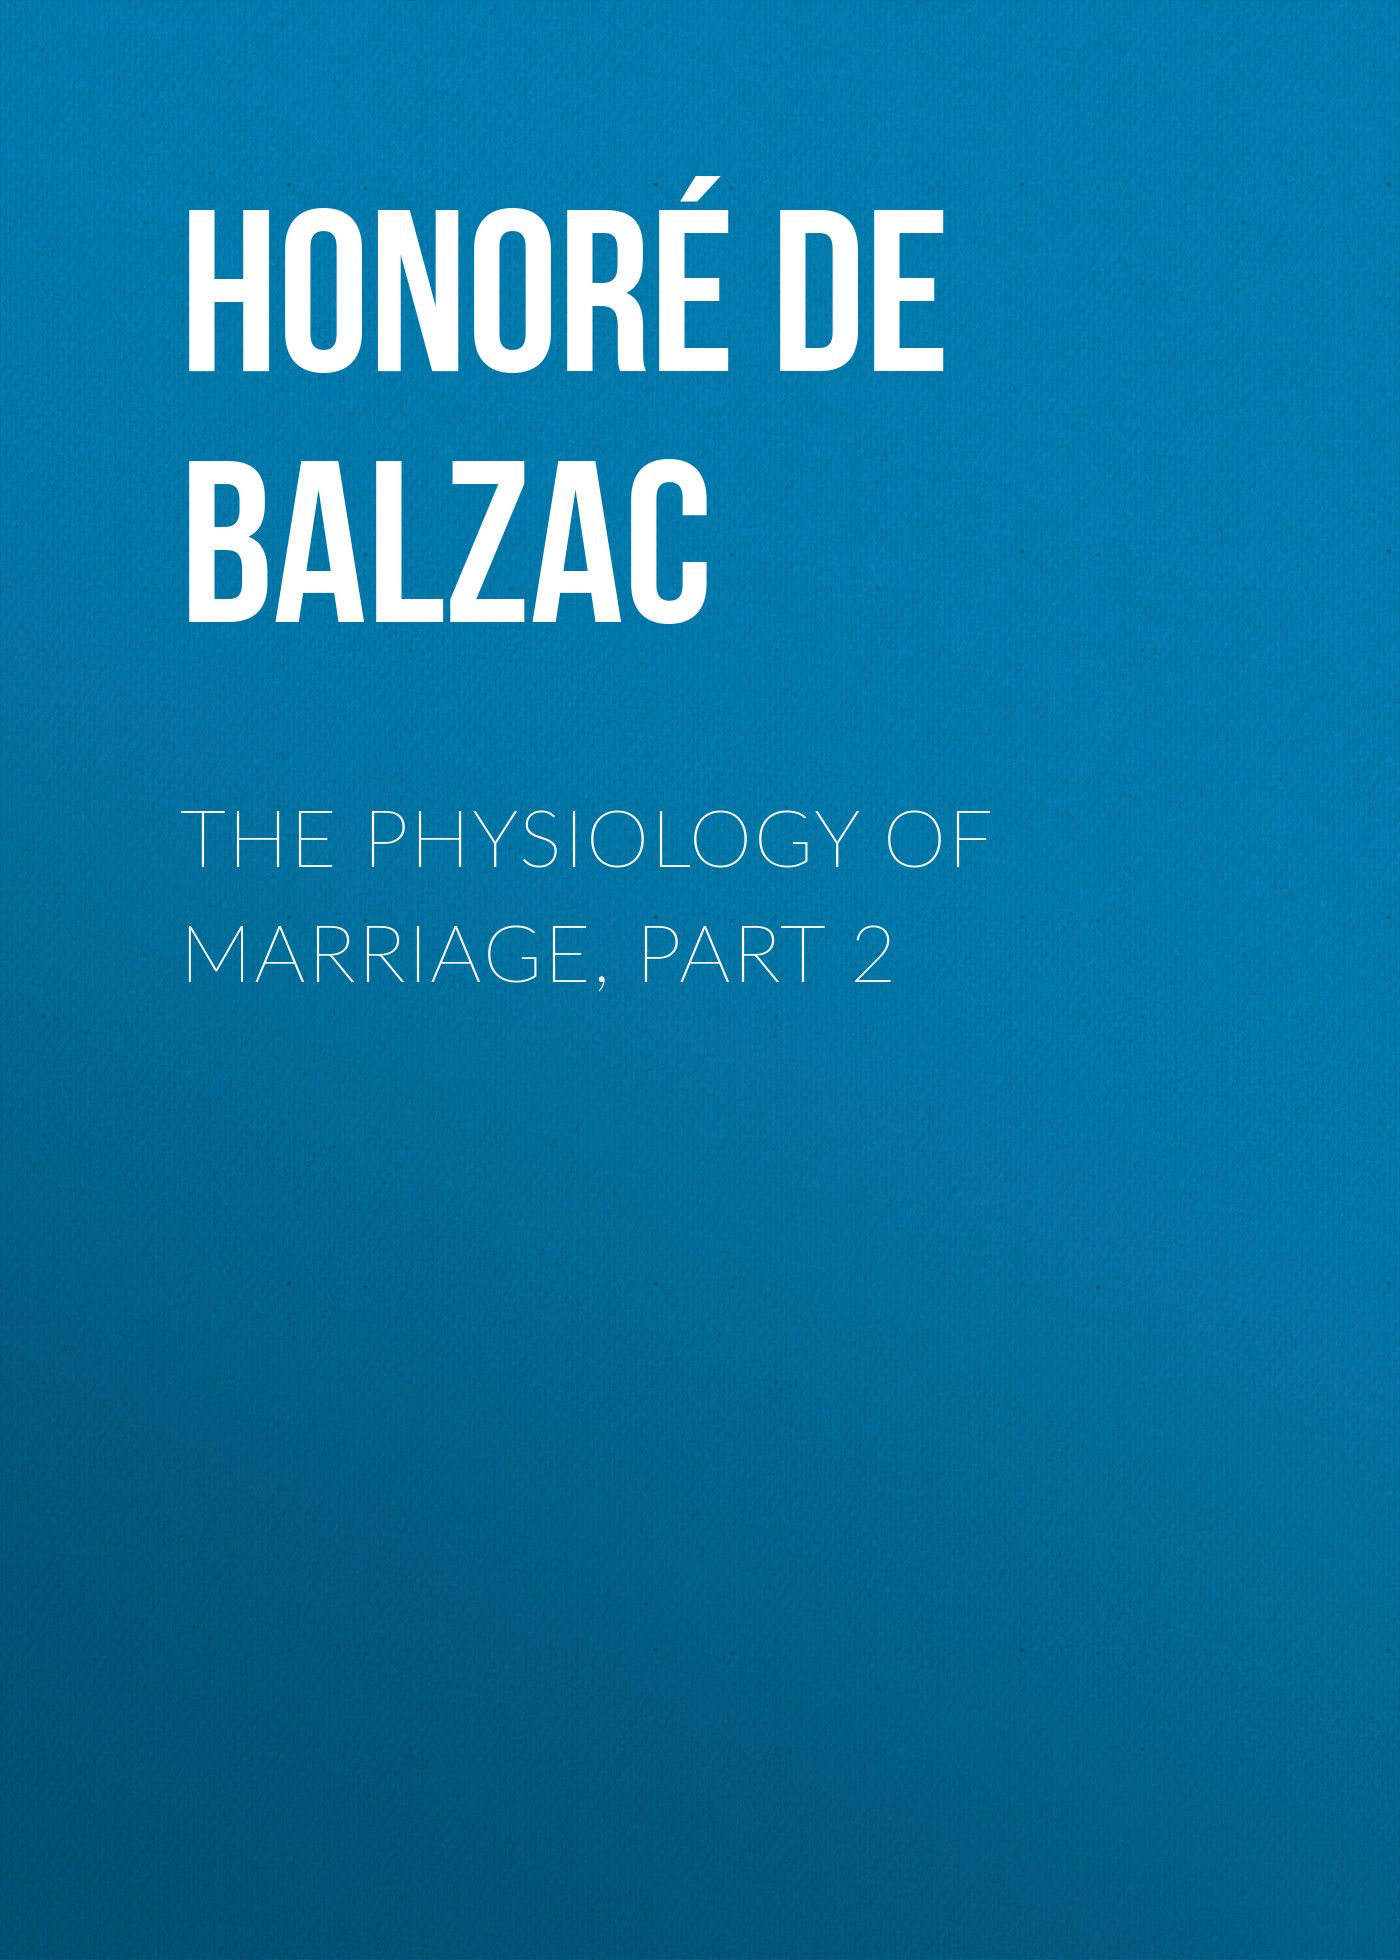 Книга The Physiology of Marriage, Part 2 из серии , созданная Honoré Balzac, может относится к жанру Литература 19 века, Зарубежная старинная литература, Зарубежная классика. Стоимость электронной книги The Physiology of Marriage, Part 2 с идентификатором 25019251 составляет 0 руб.